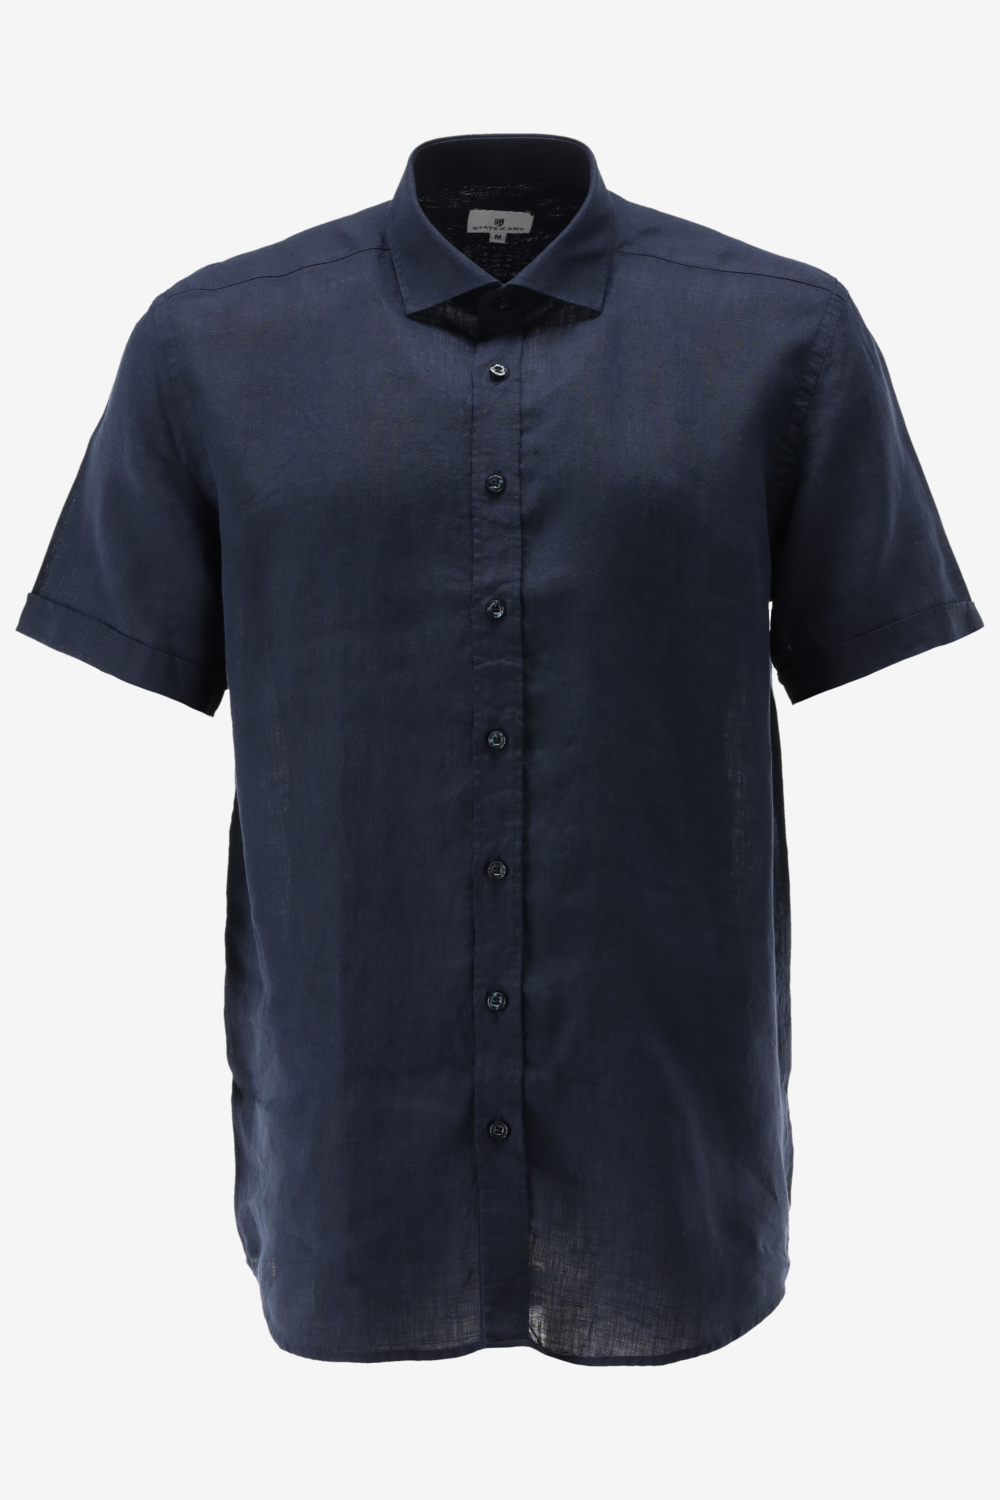 State of Art - Short Sleeve Overhemd Linnen Navy - Maat XL - Regular-fit